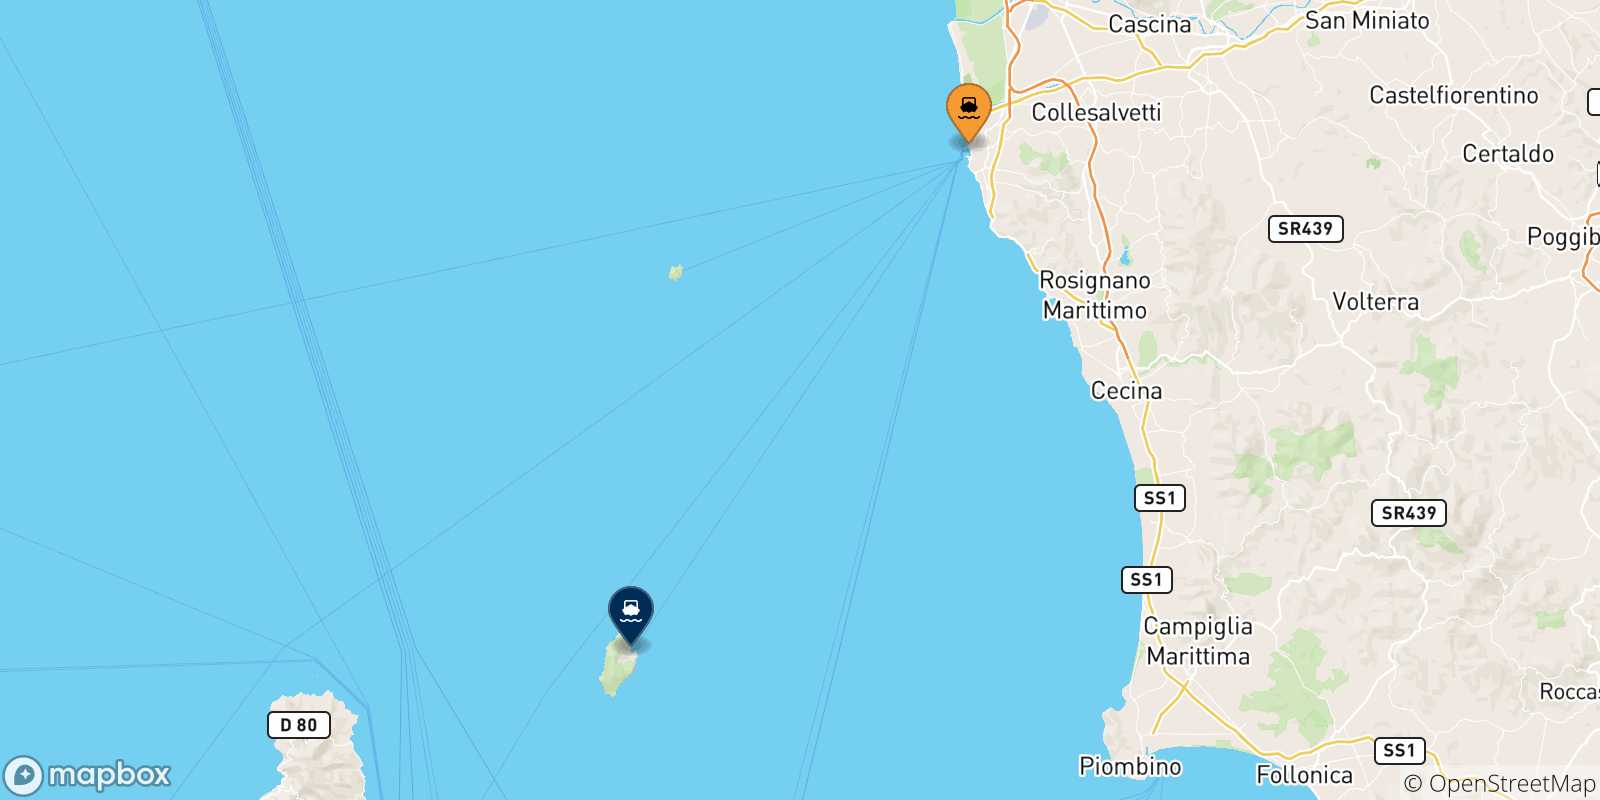 Mappa delle possibili rotte tra l'Italia e l'Isola Di Capraia